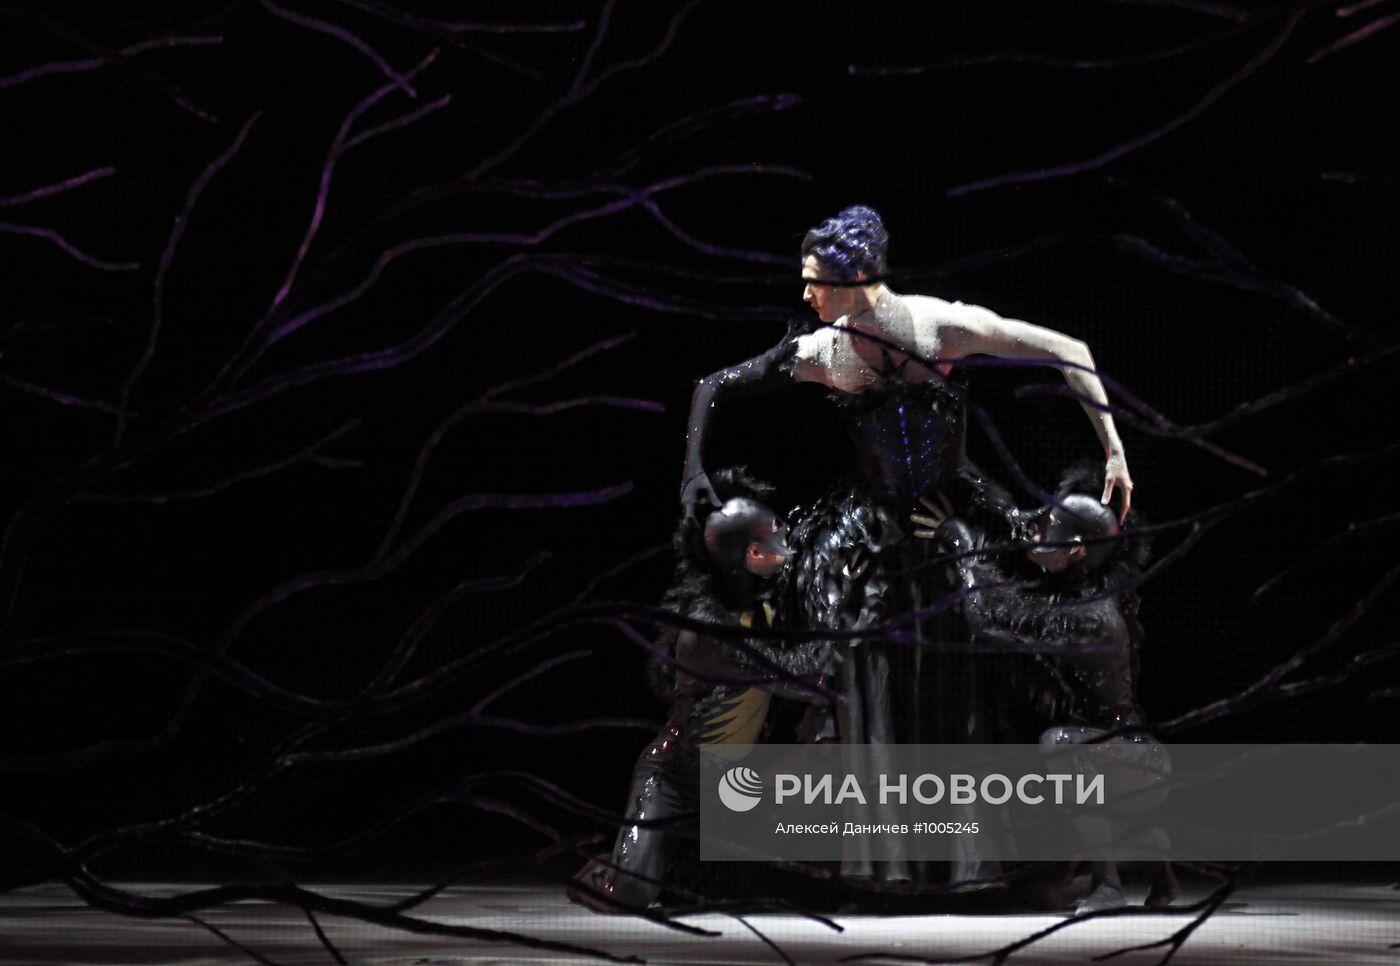 Репетиции балета "Спящая красавица" в Михайловском театре